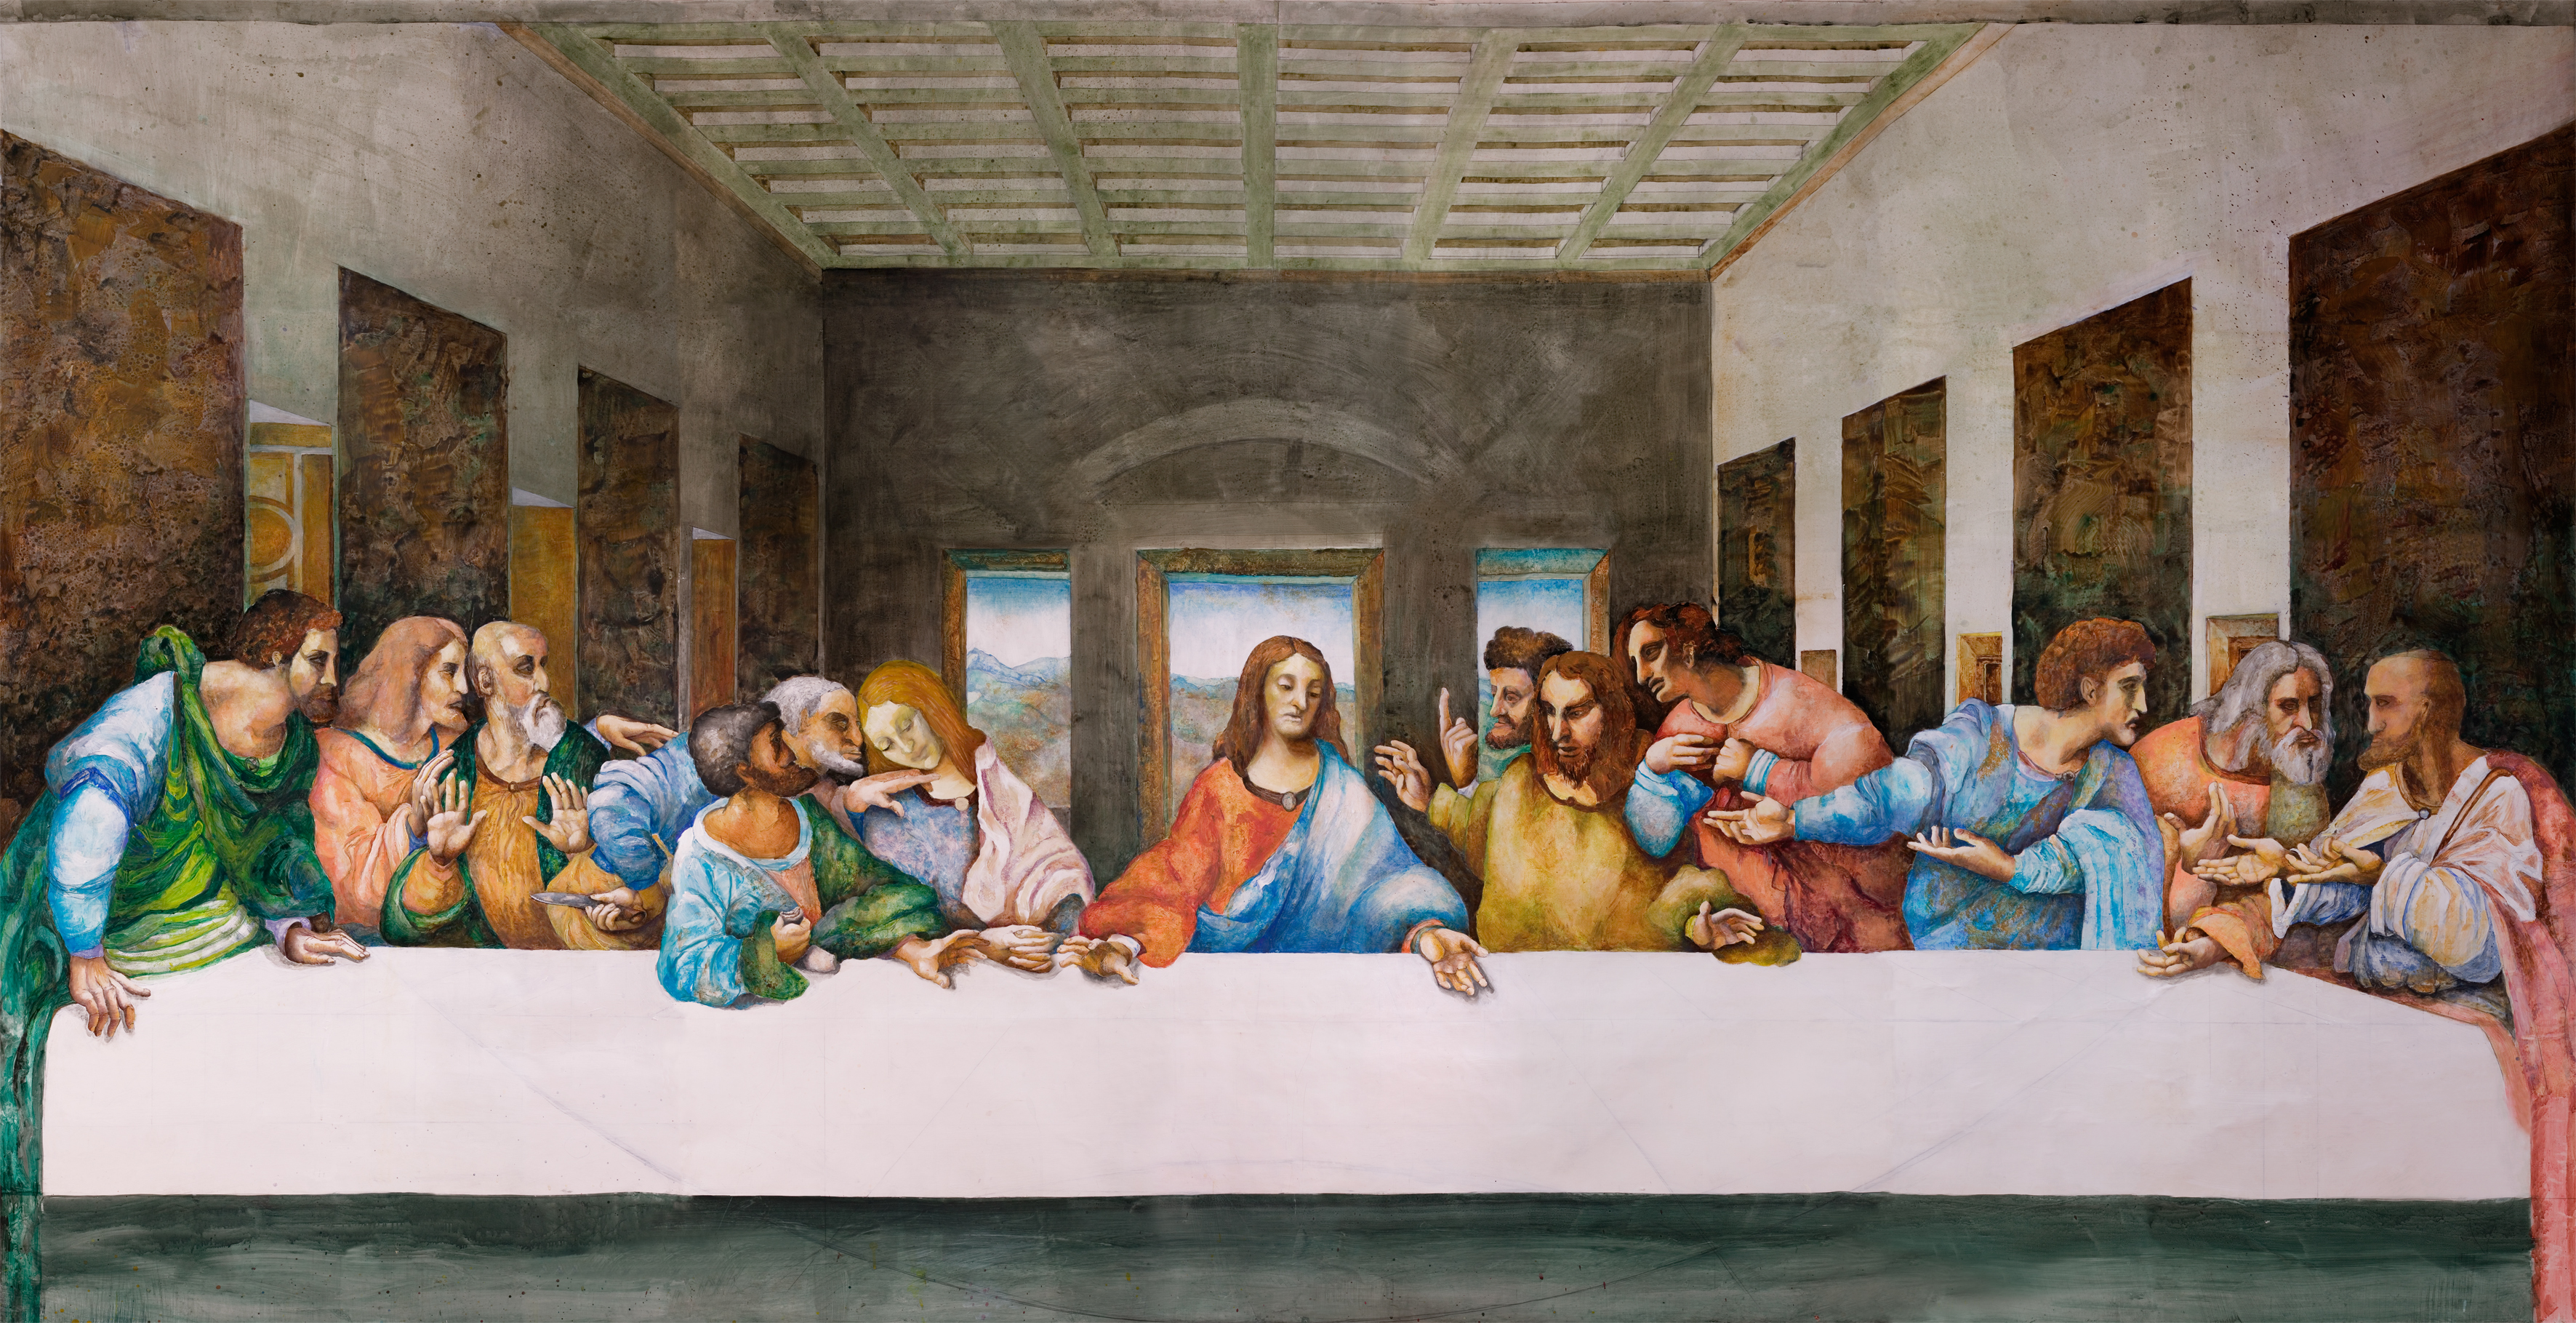 Kopie Abendmahl von Leonardo da Vinci, 398 x 209, Acryl auf Leinen, 2000-2005